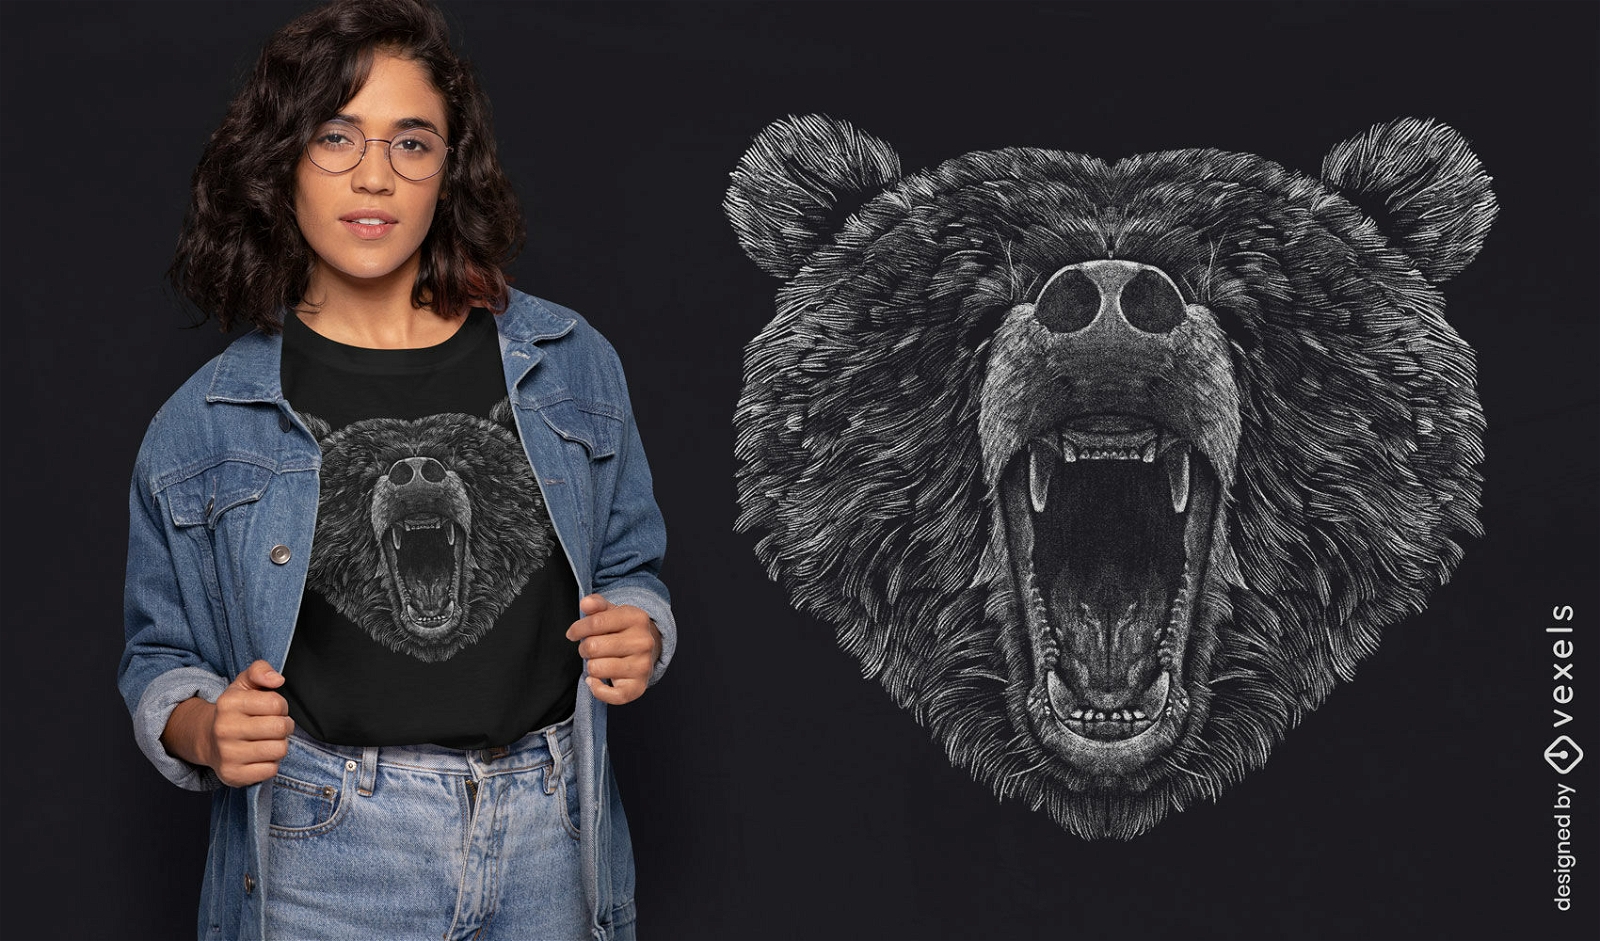 Diseño de camiseta realista con cabeza de oso.